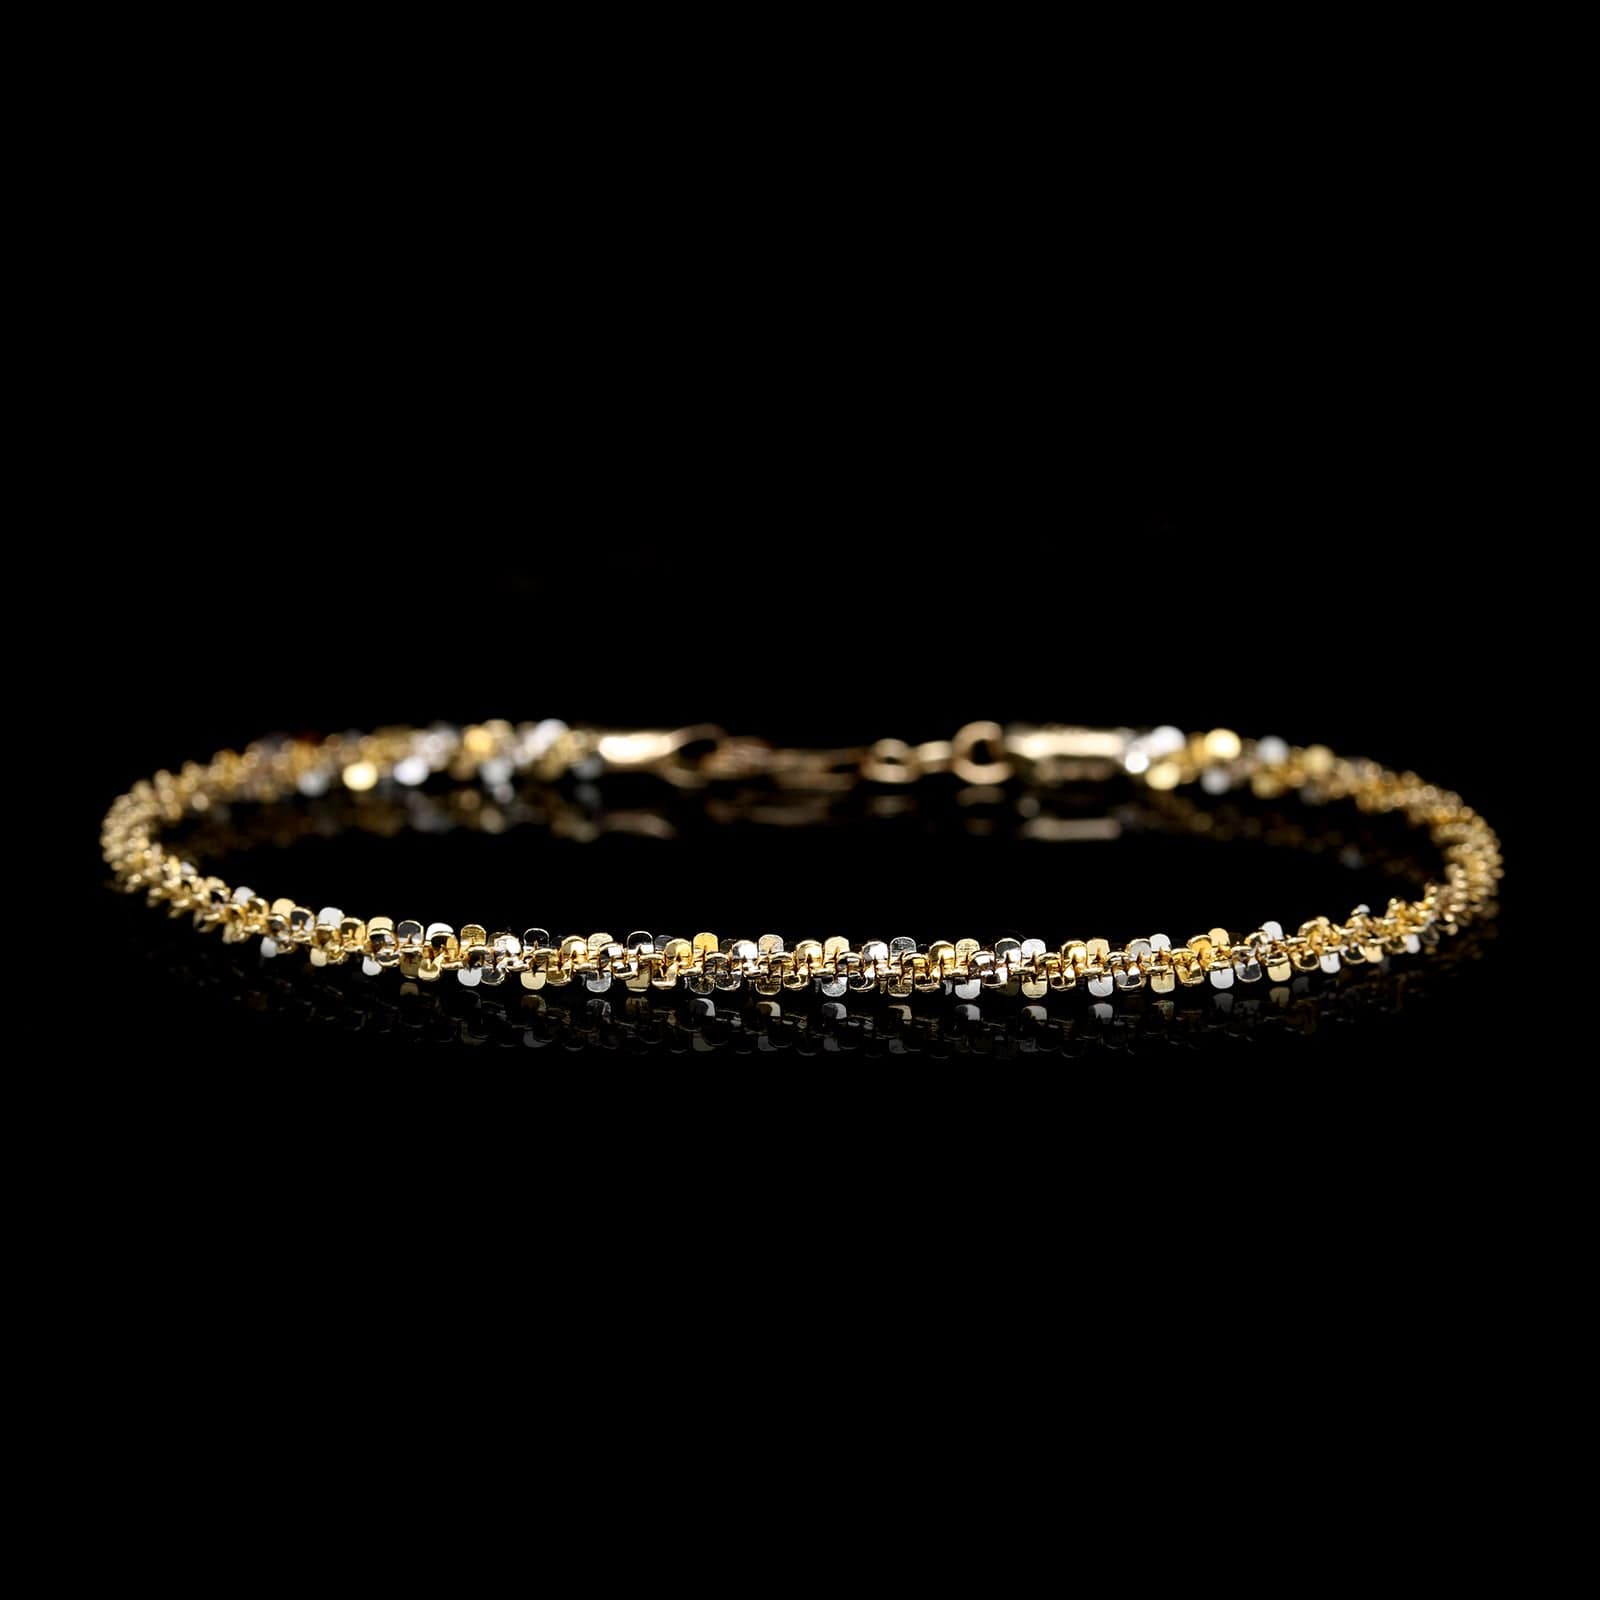 14K Two-Tone Gold Estate Fancy Link Bracelet